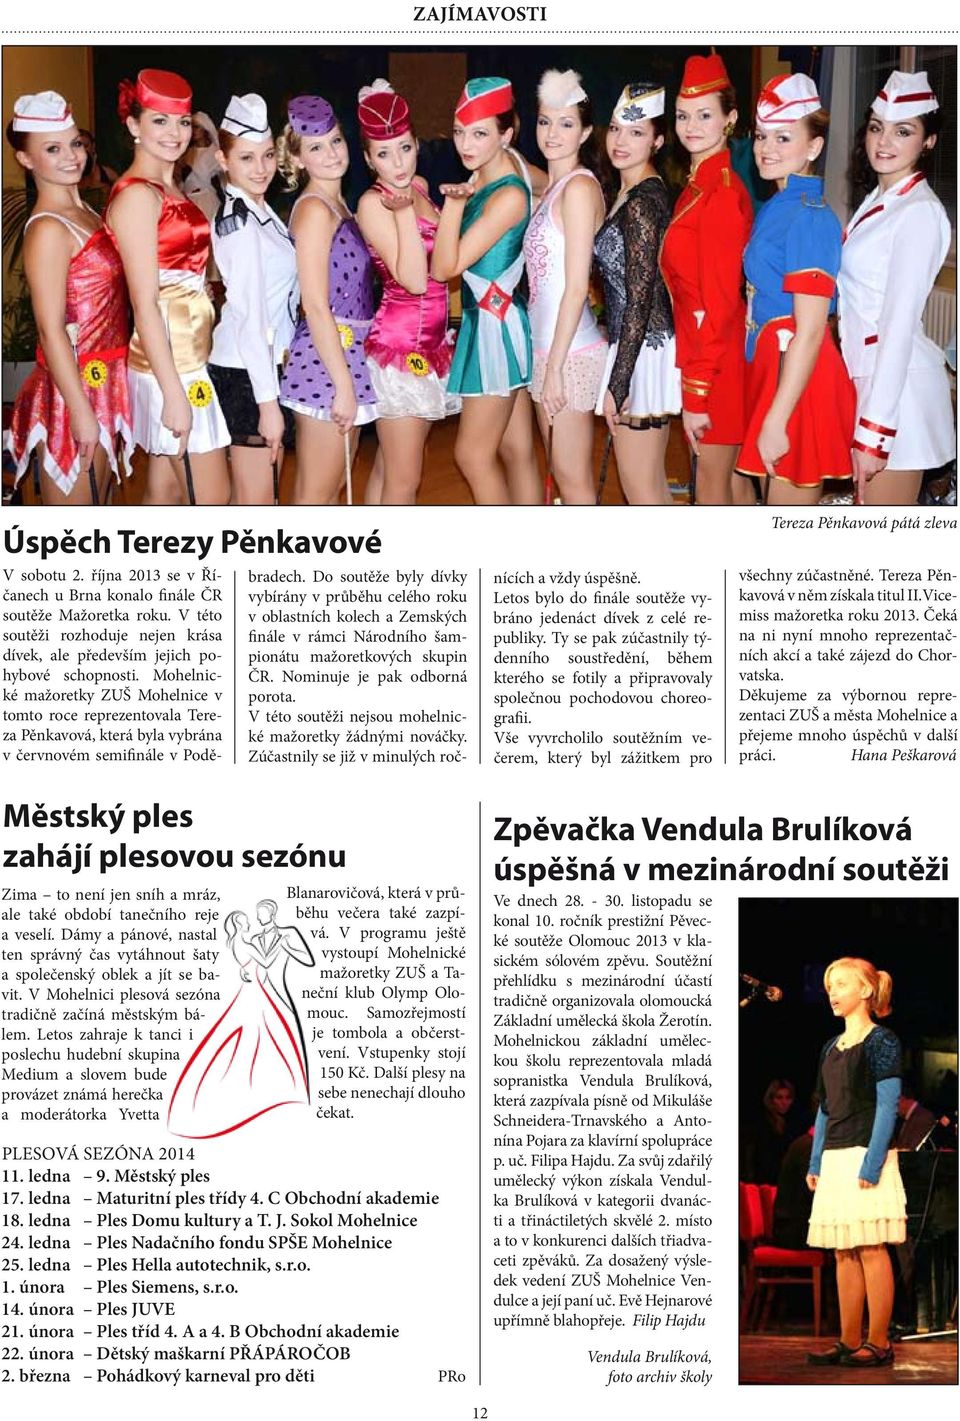 Mohelnické mažoretky ZUŠ Mohelnice v tomto roce reprezentovala Tereza Pěnkavová, která byla vybrána v červnovém semifinále v Poděbradech.